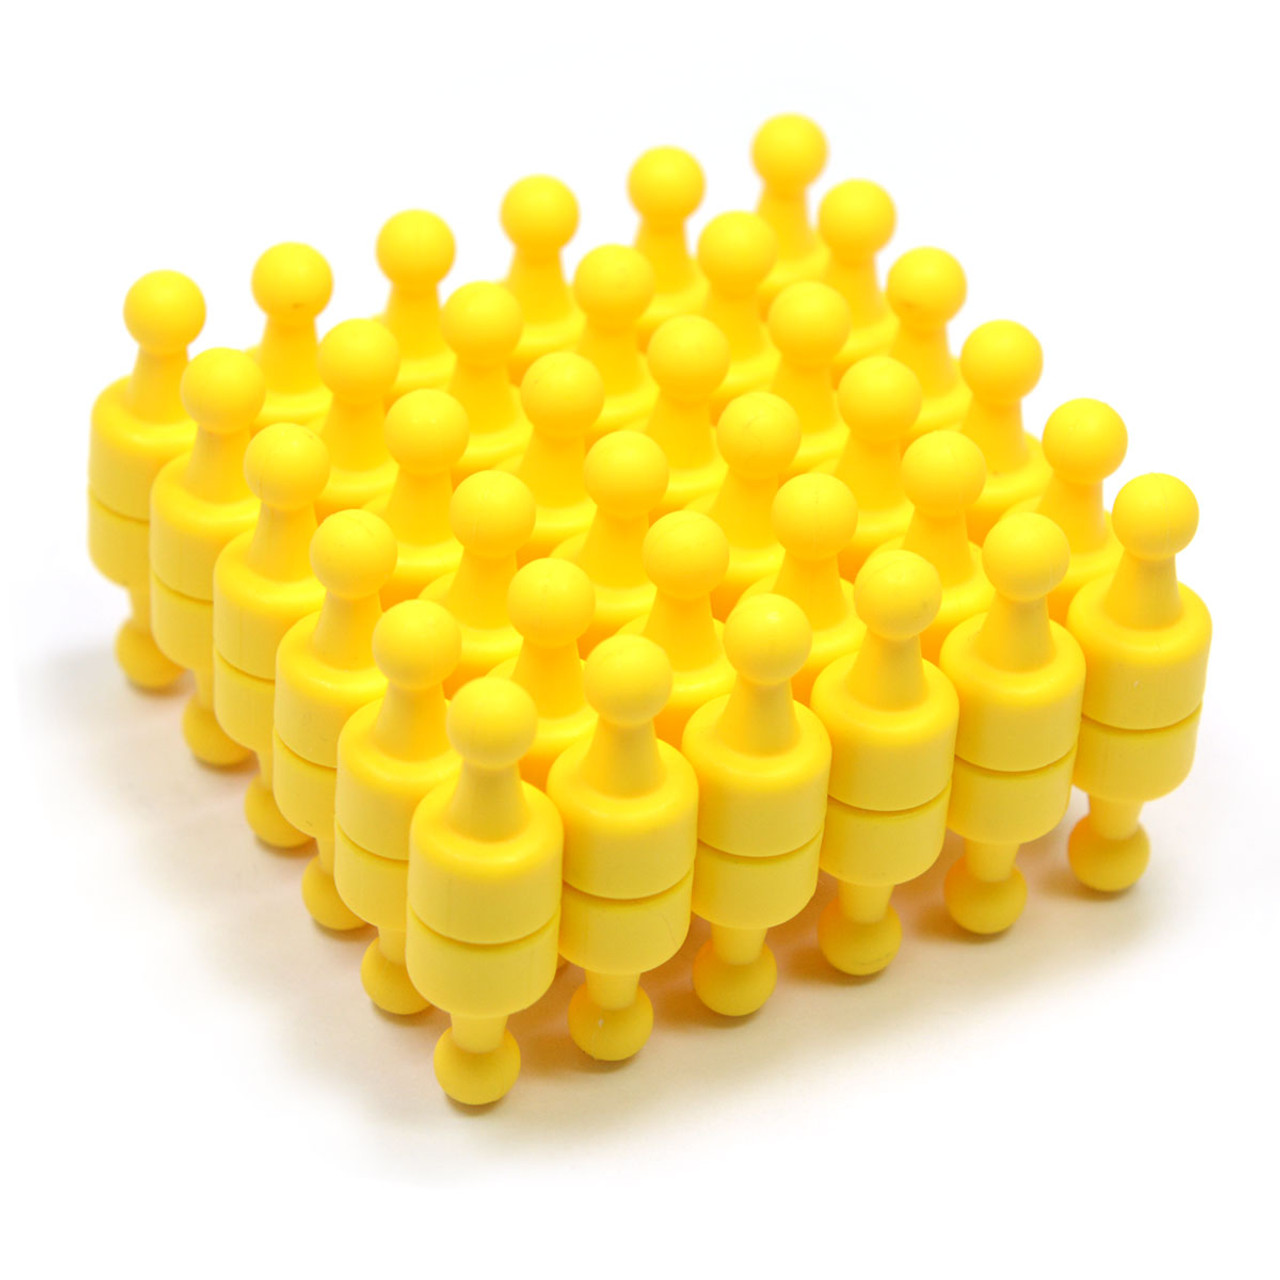 Yellow Push pins